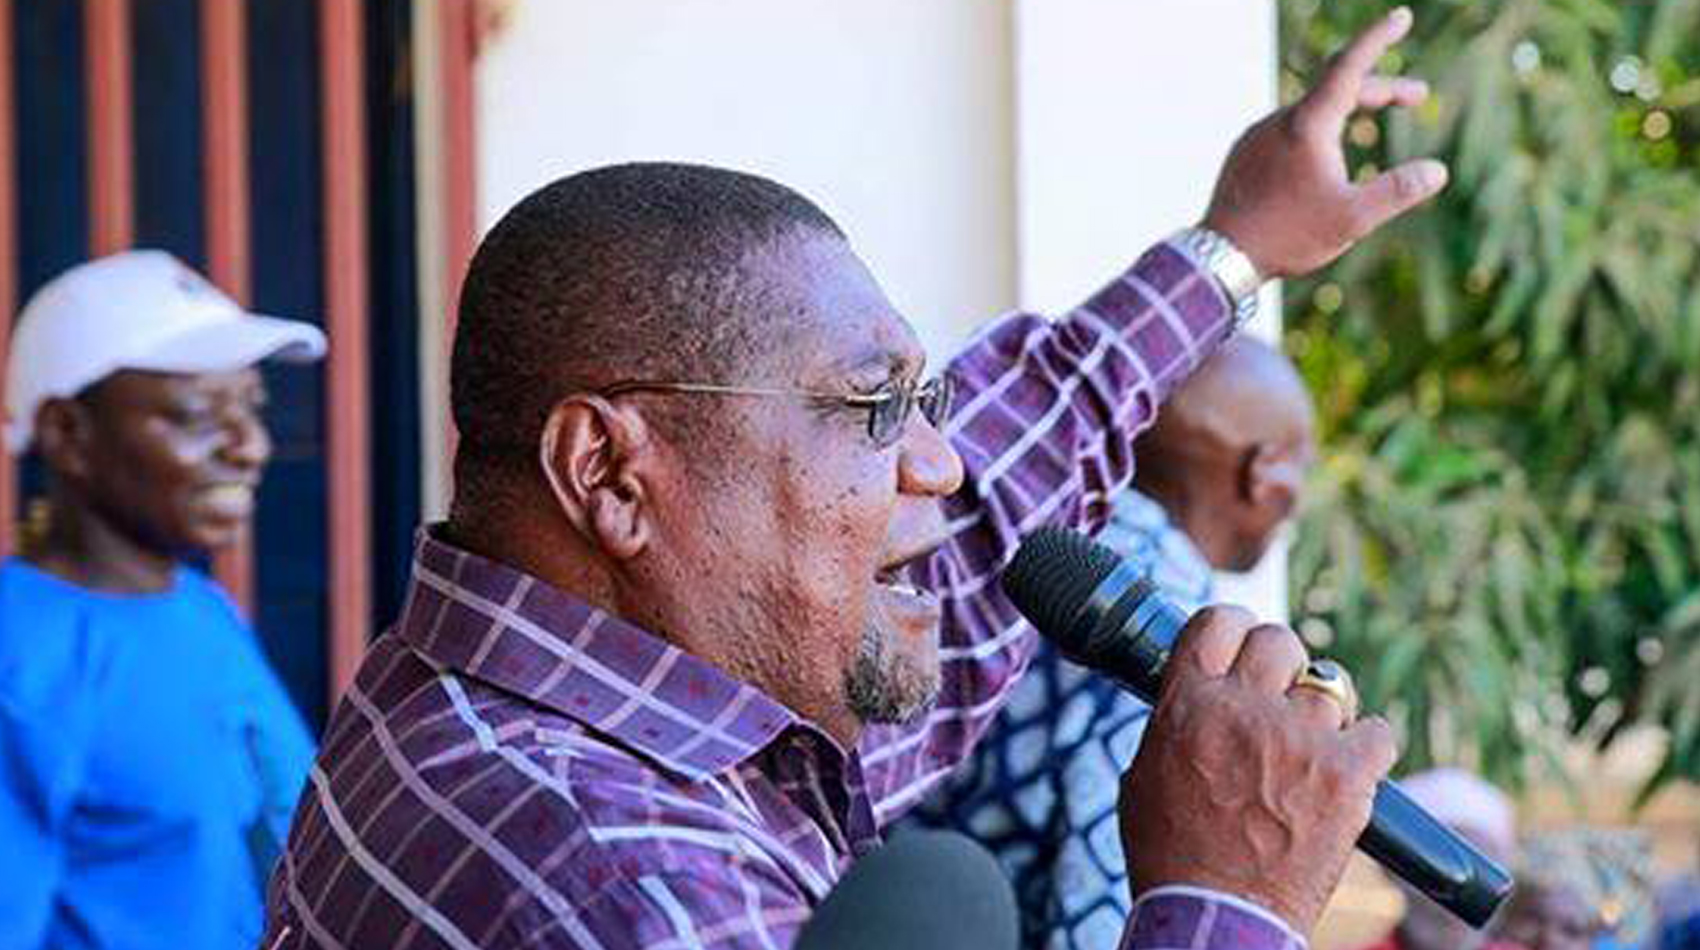 Eleições em Moçambique: Líder da oposição acusa presidente de “empurrar o país para a guerra”